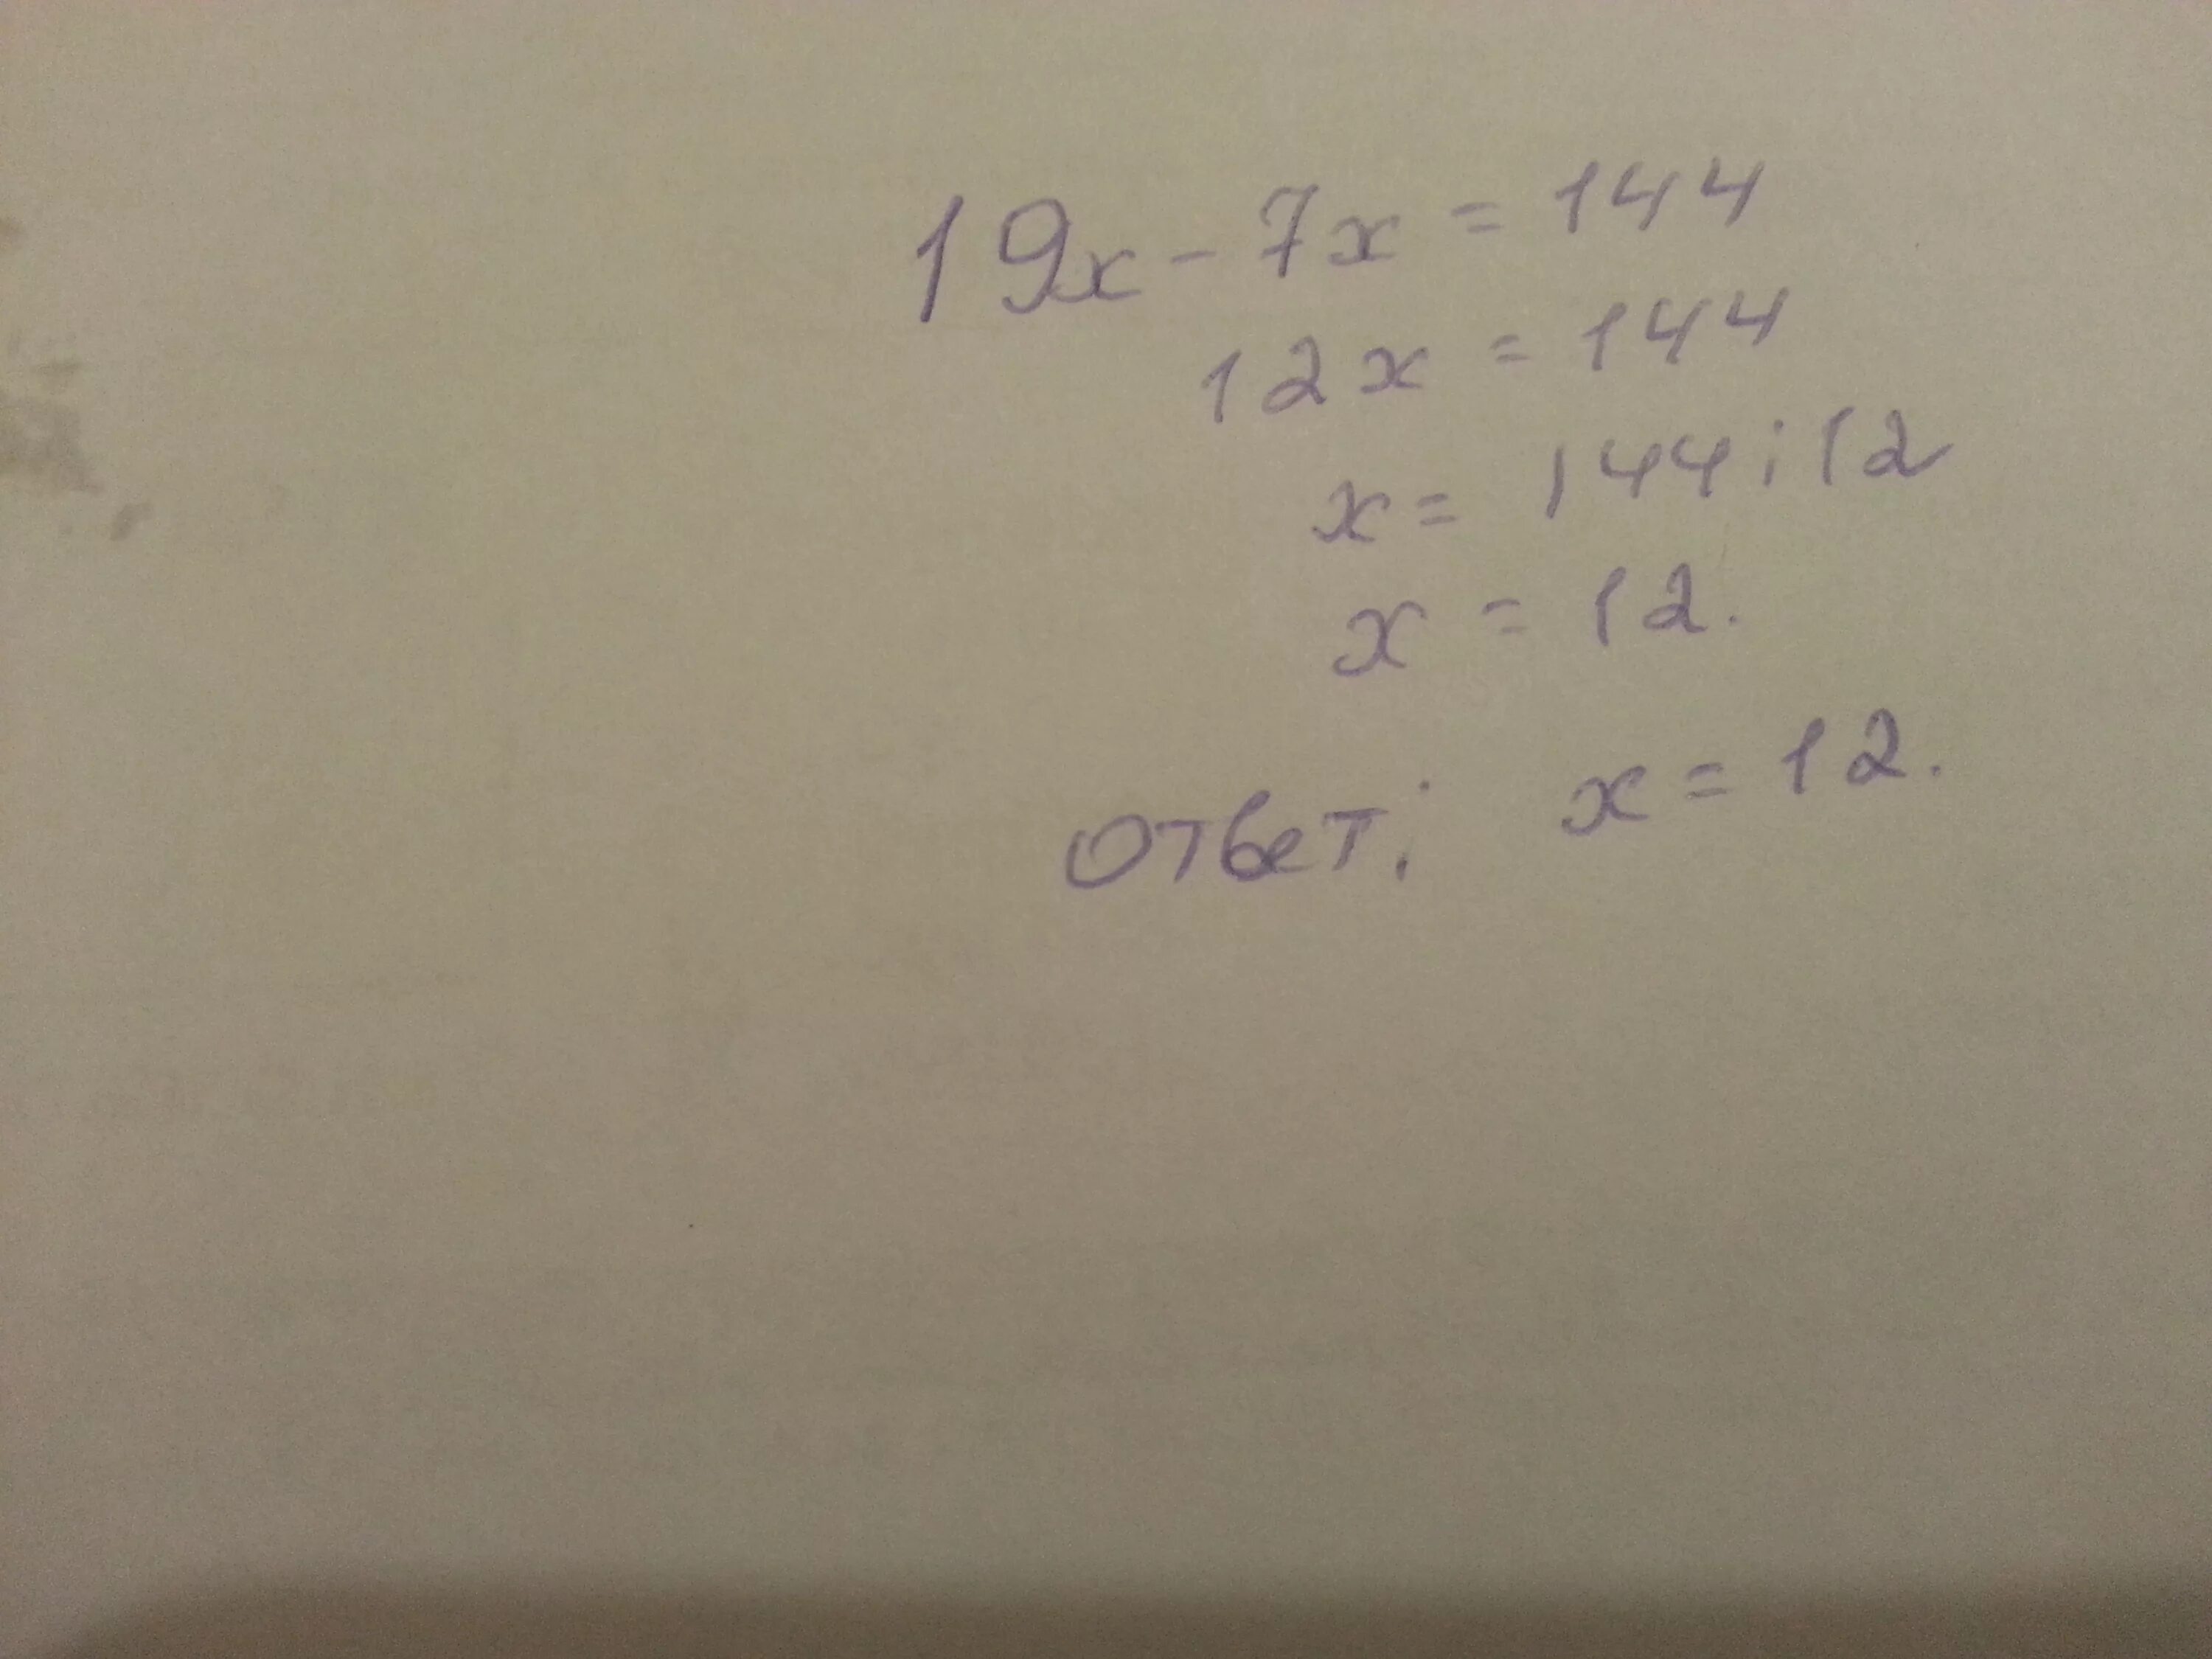 3х 7 22. 19х-7х 144. 19х 7х 144 решение. Решение уравнения 19x-7x 144. 19x-7x=144.